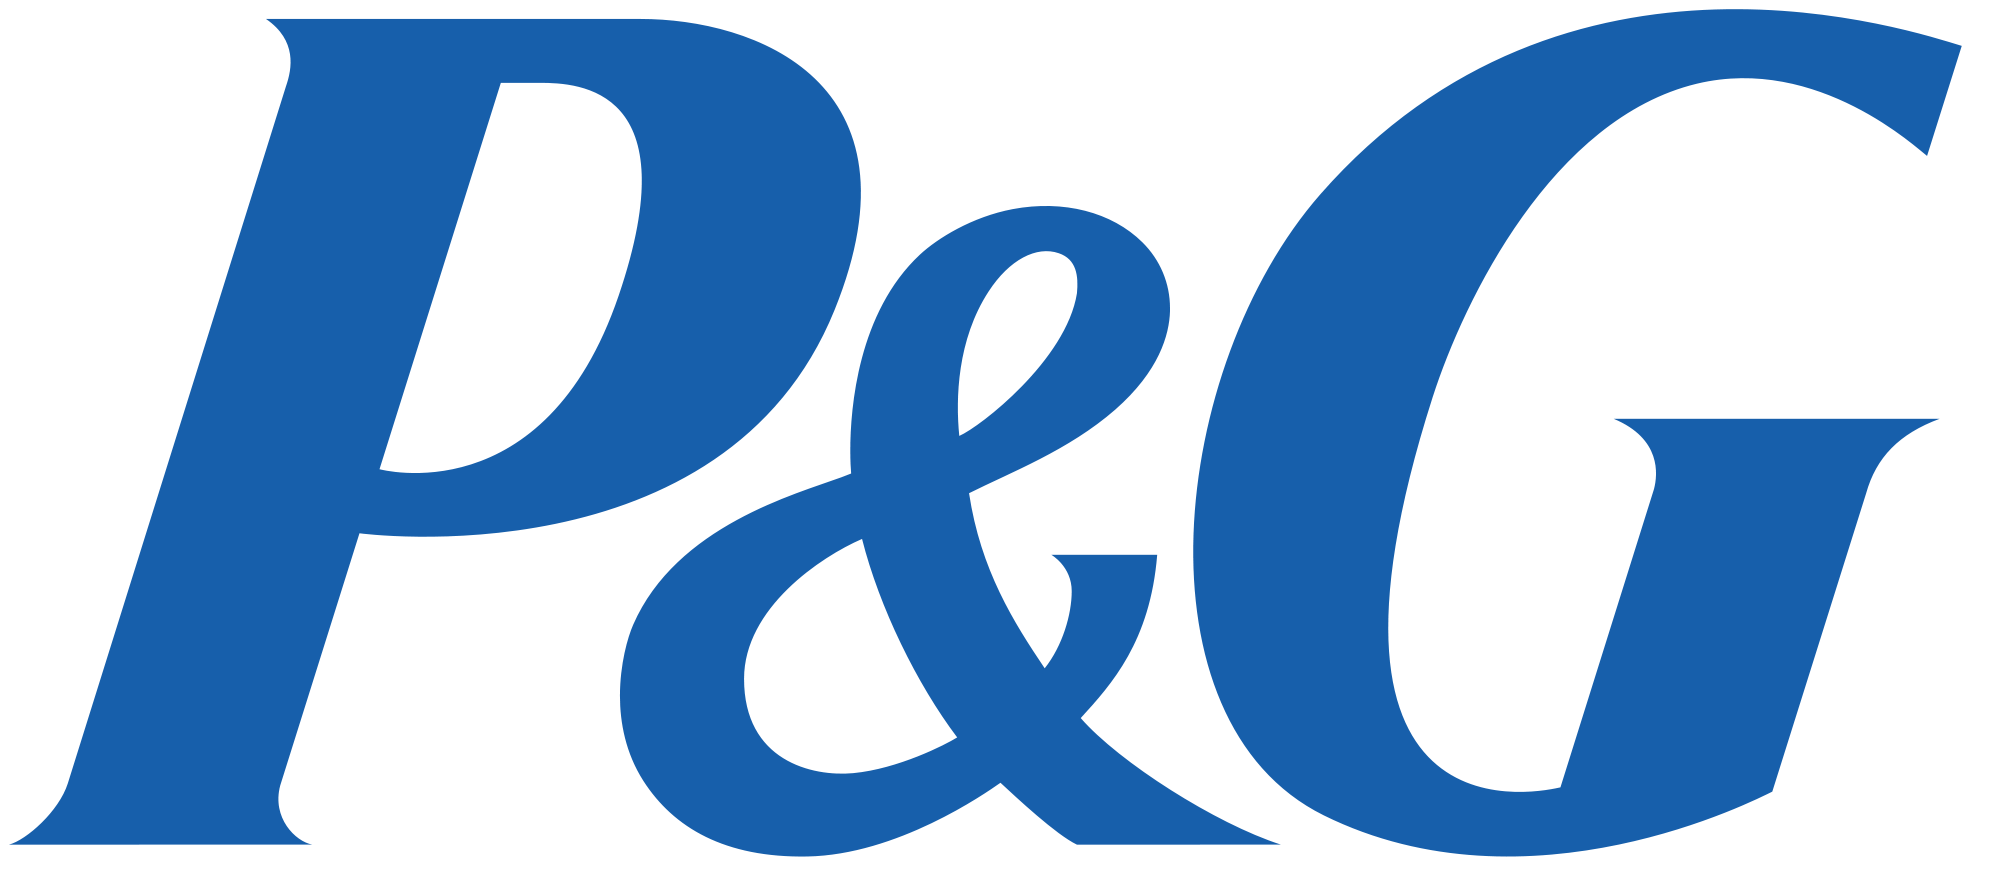 P&G_logo.png